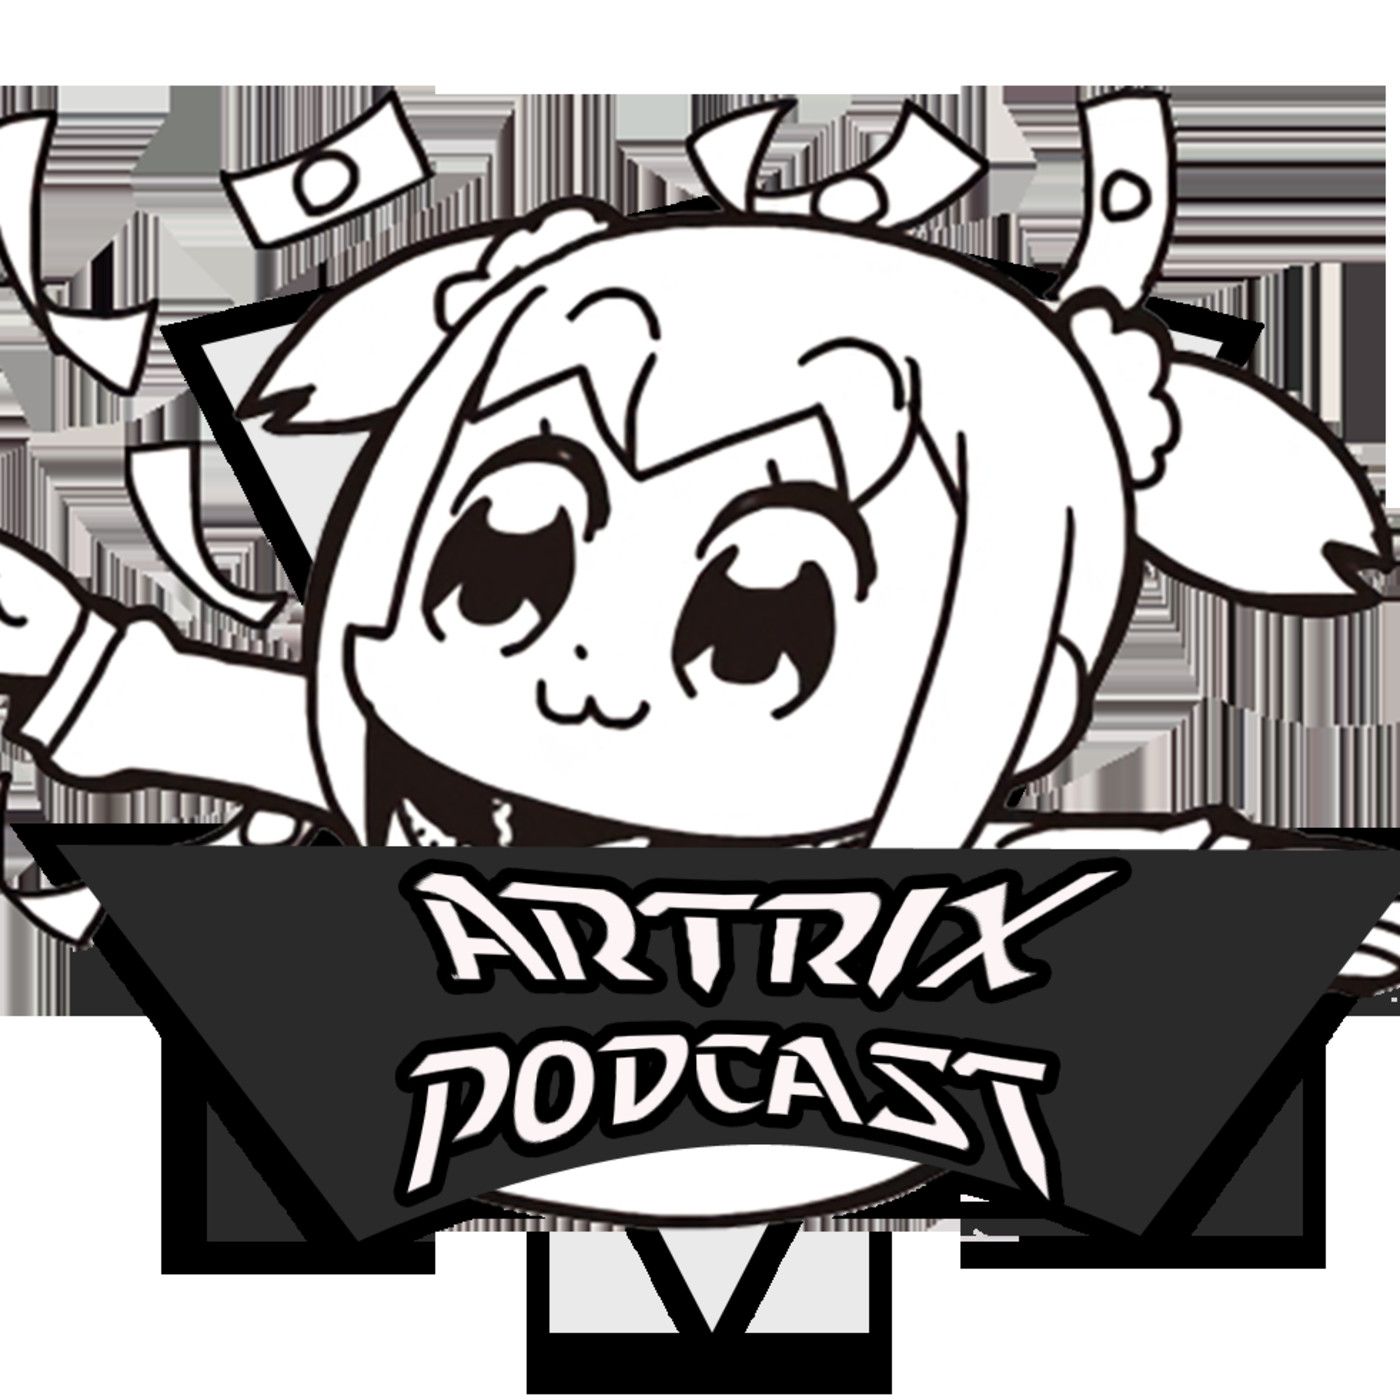 Artrix Podcast: El futuro de Ash y el anime de Pokemon